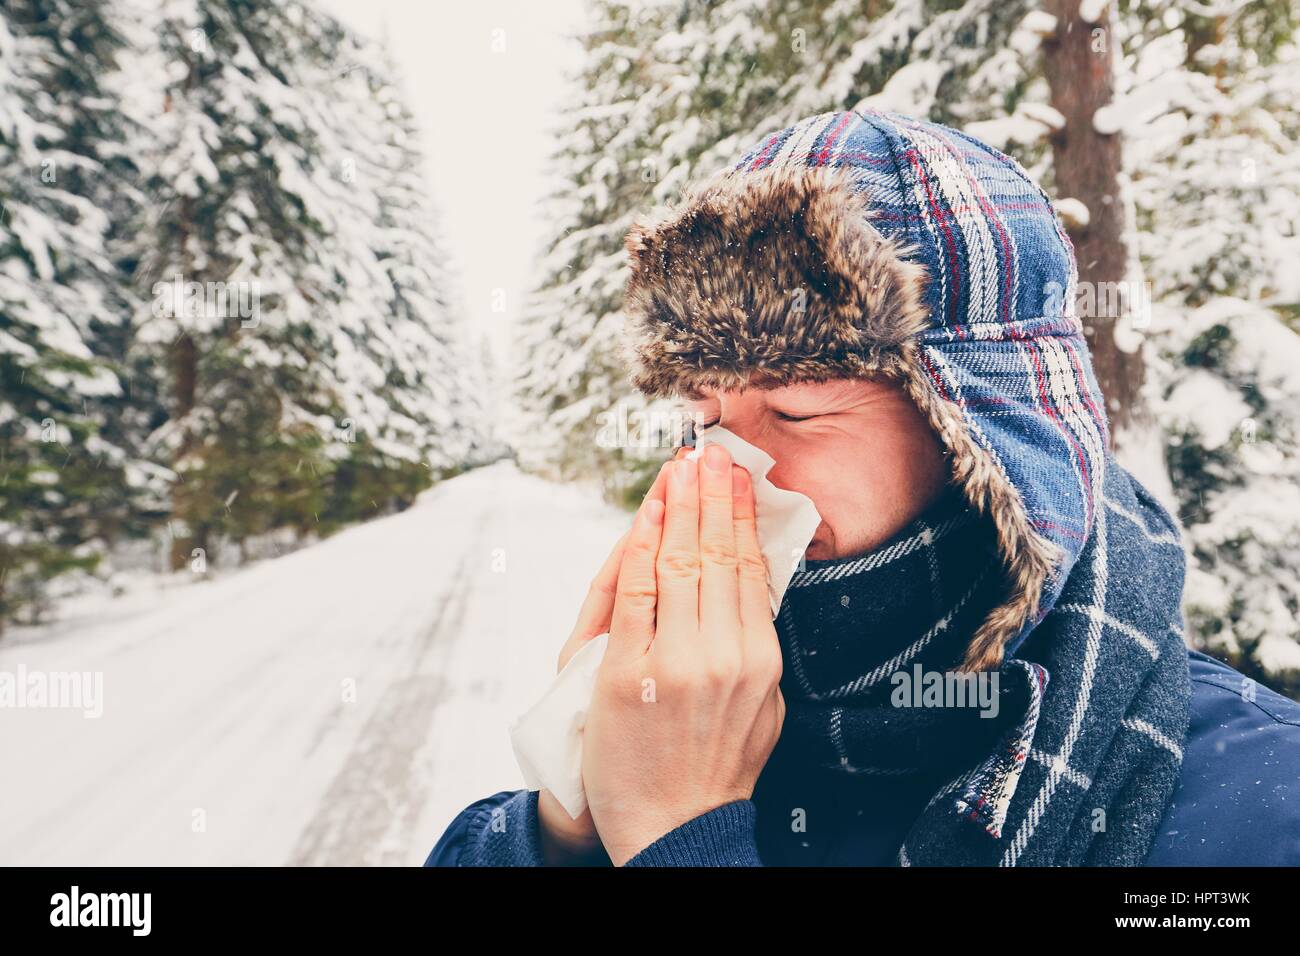 Kranker Mann mit Papiertuch in der Winter-Natur - Gesundheit und Medizin-Konzept Stockfoto